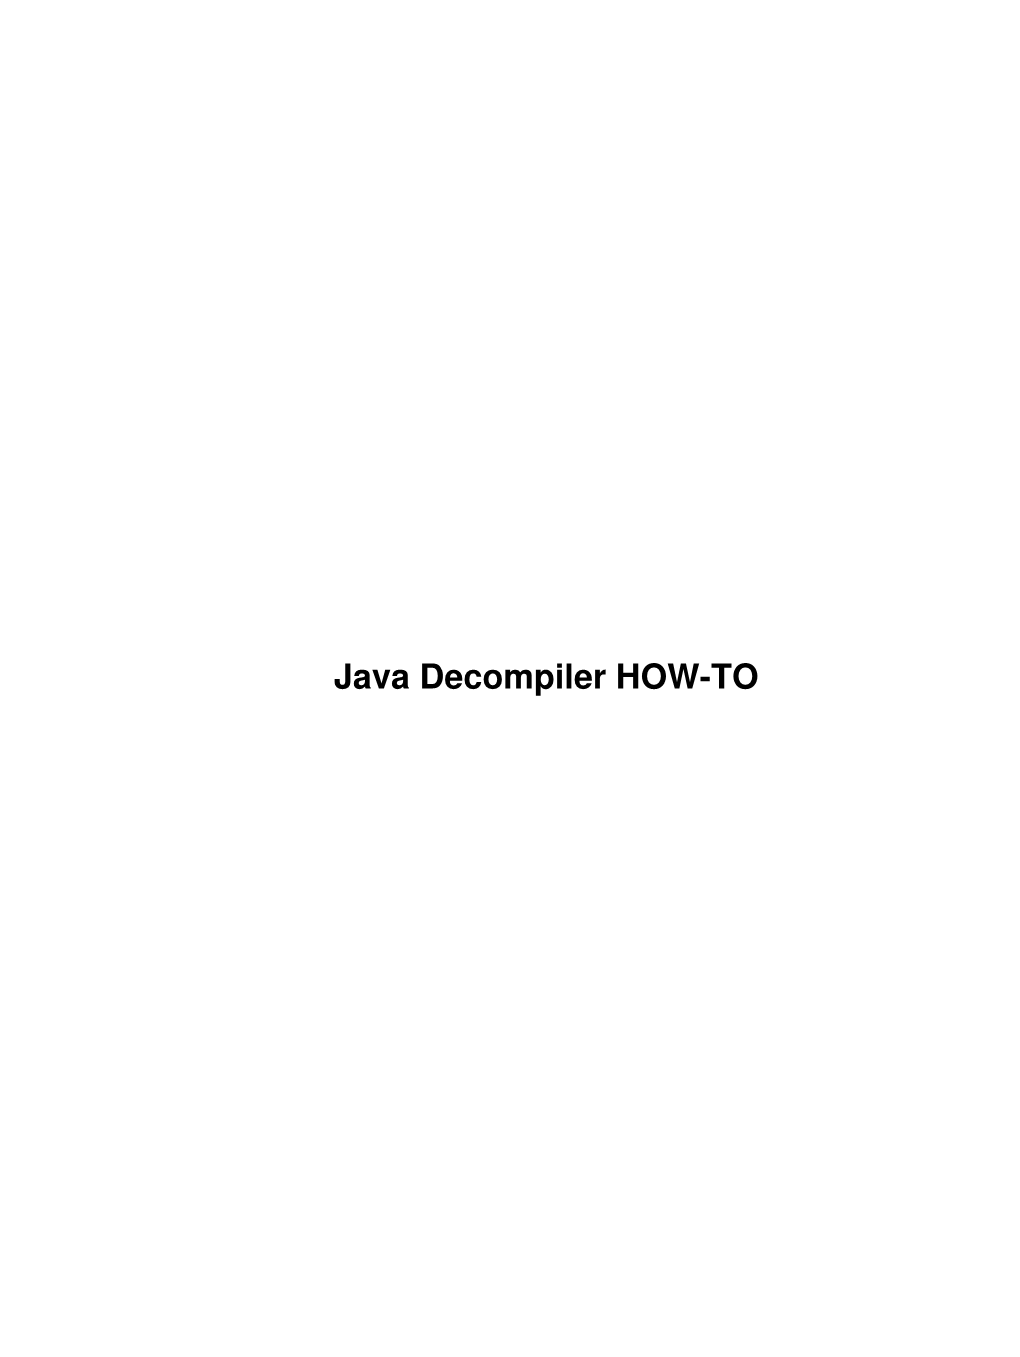 Java Decompiler HOW-TO Java Decompiler HOW-TO Table of Contents Java Decompiler HOW-TO